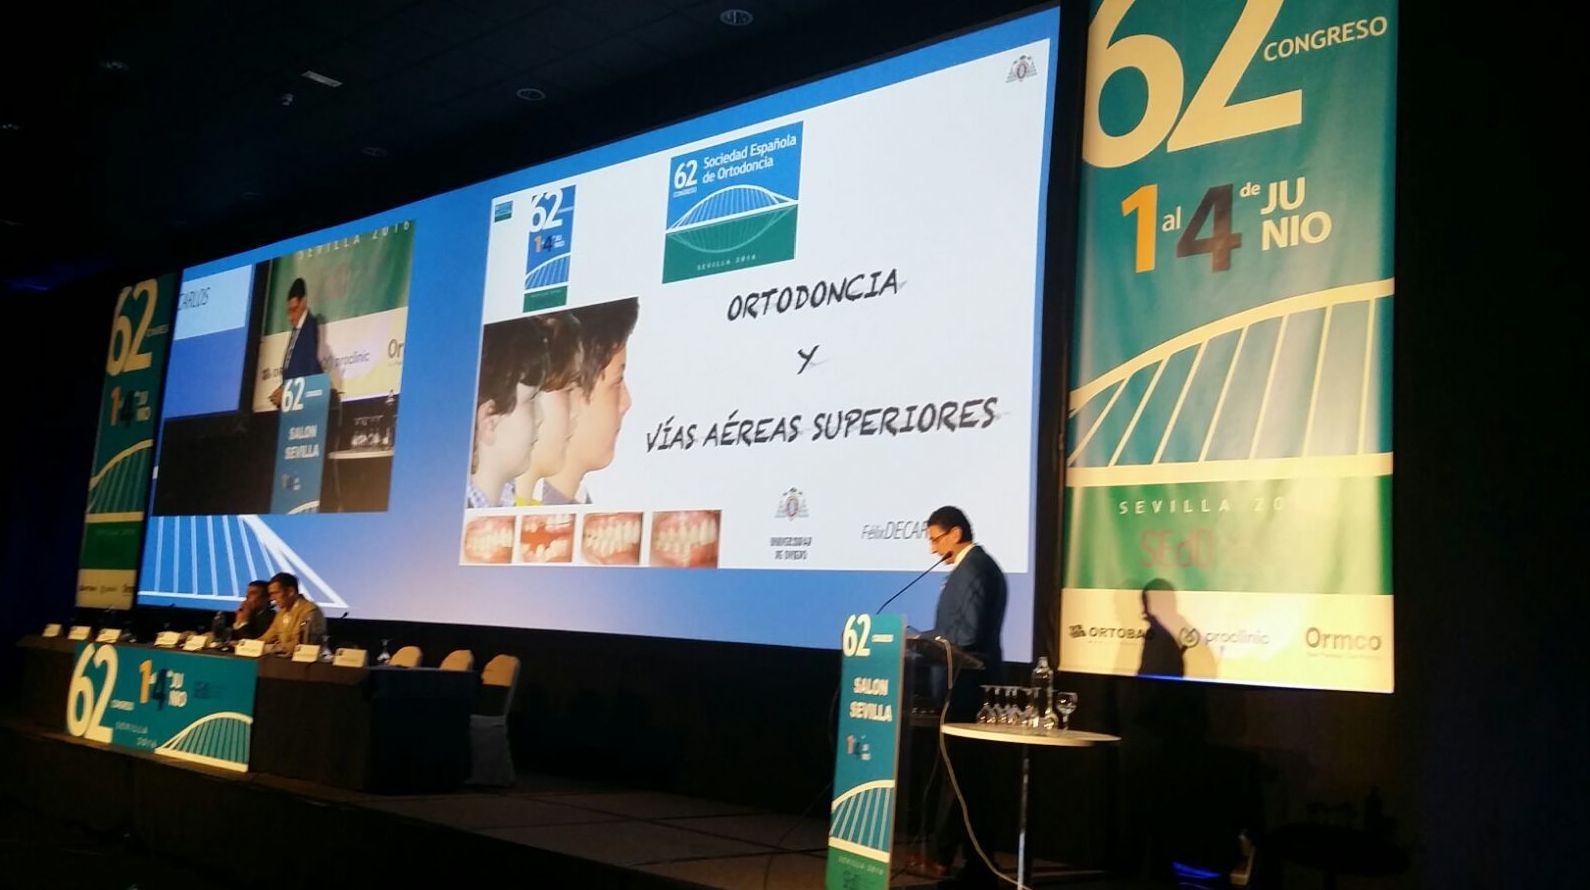 Congreso en Sevilla de ortodoncia y vías aéreas superiores